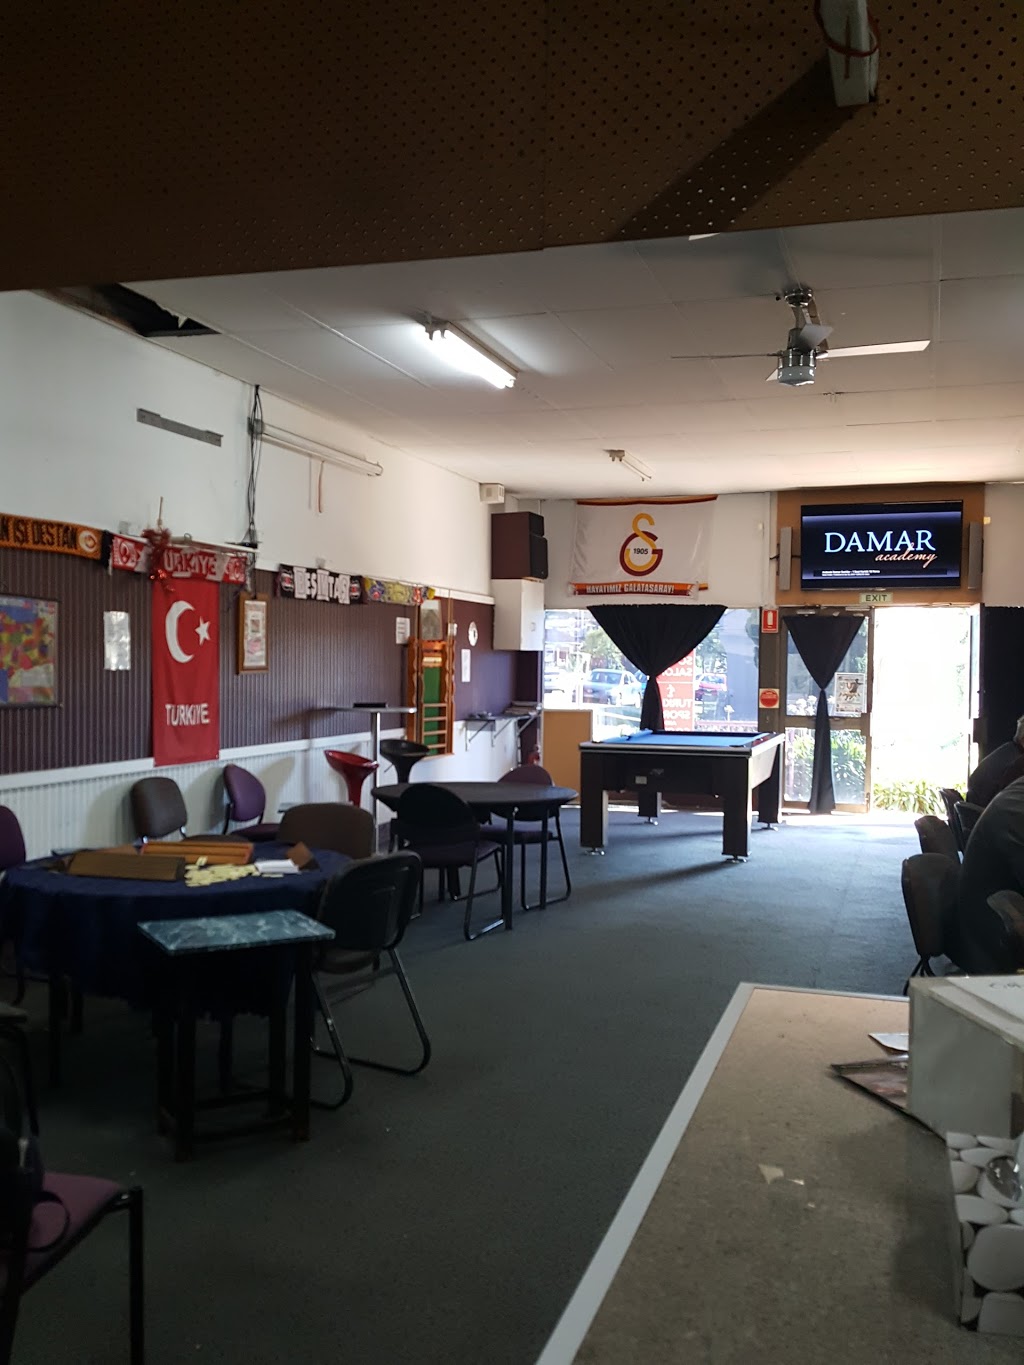 Turkish Sports & Social Lounge | cafe | 5 Lake Ave, Cringila NSW 2502, Australia | 0449111464 OR +61 449 111 464